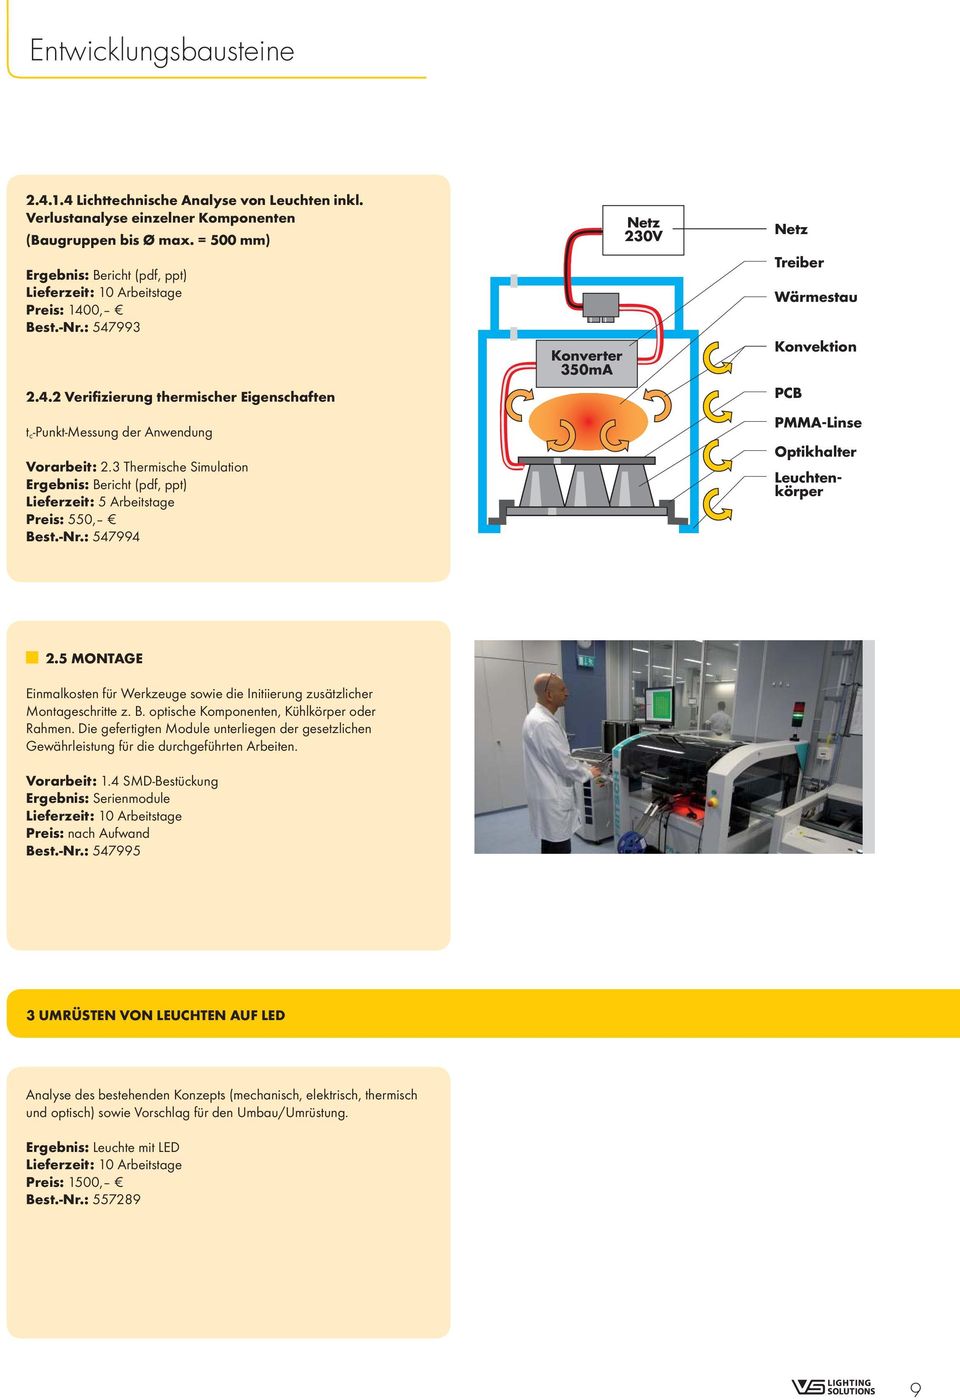 3 Thermische Simulation Ergebnis: Bericht (pdf, ppt) Lieferzeit: 5 Arbeitstage Preis: 550, Best.-Nr.